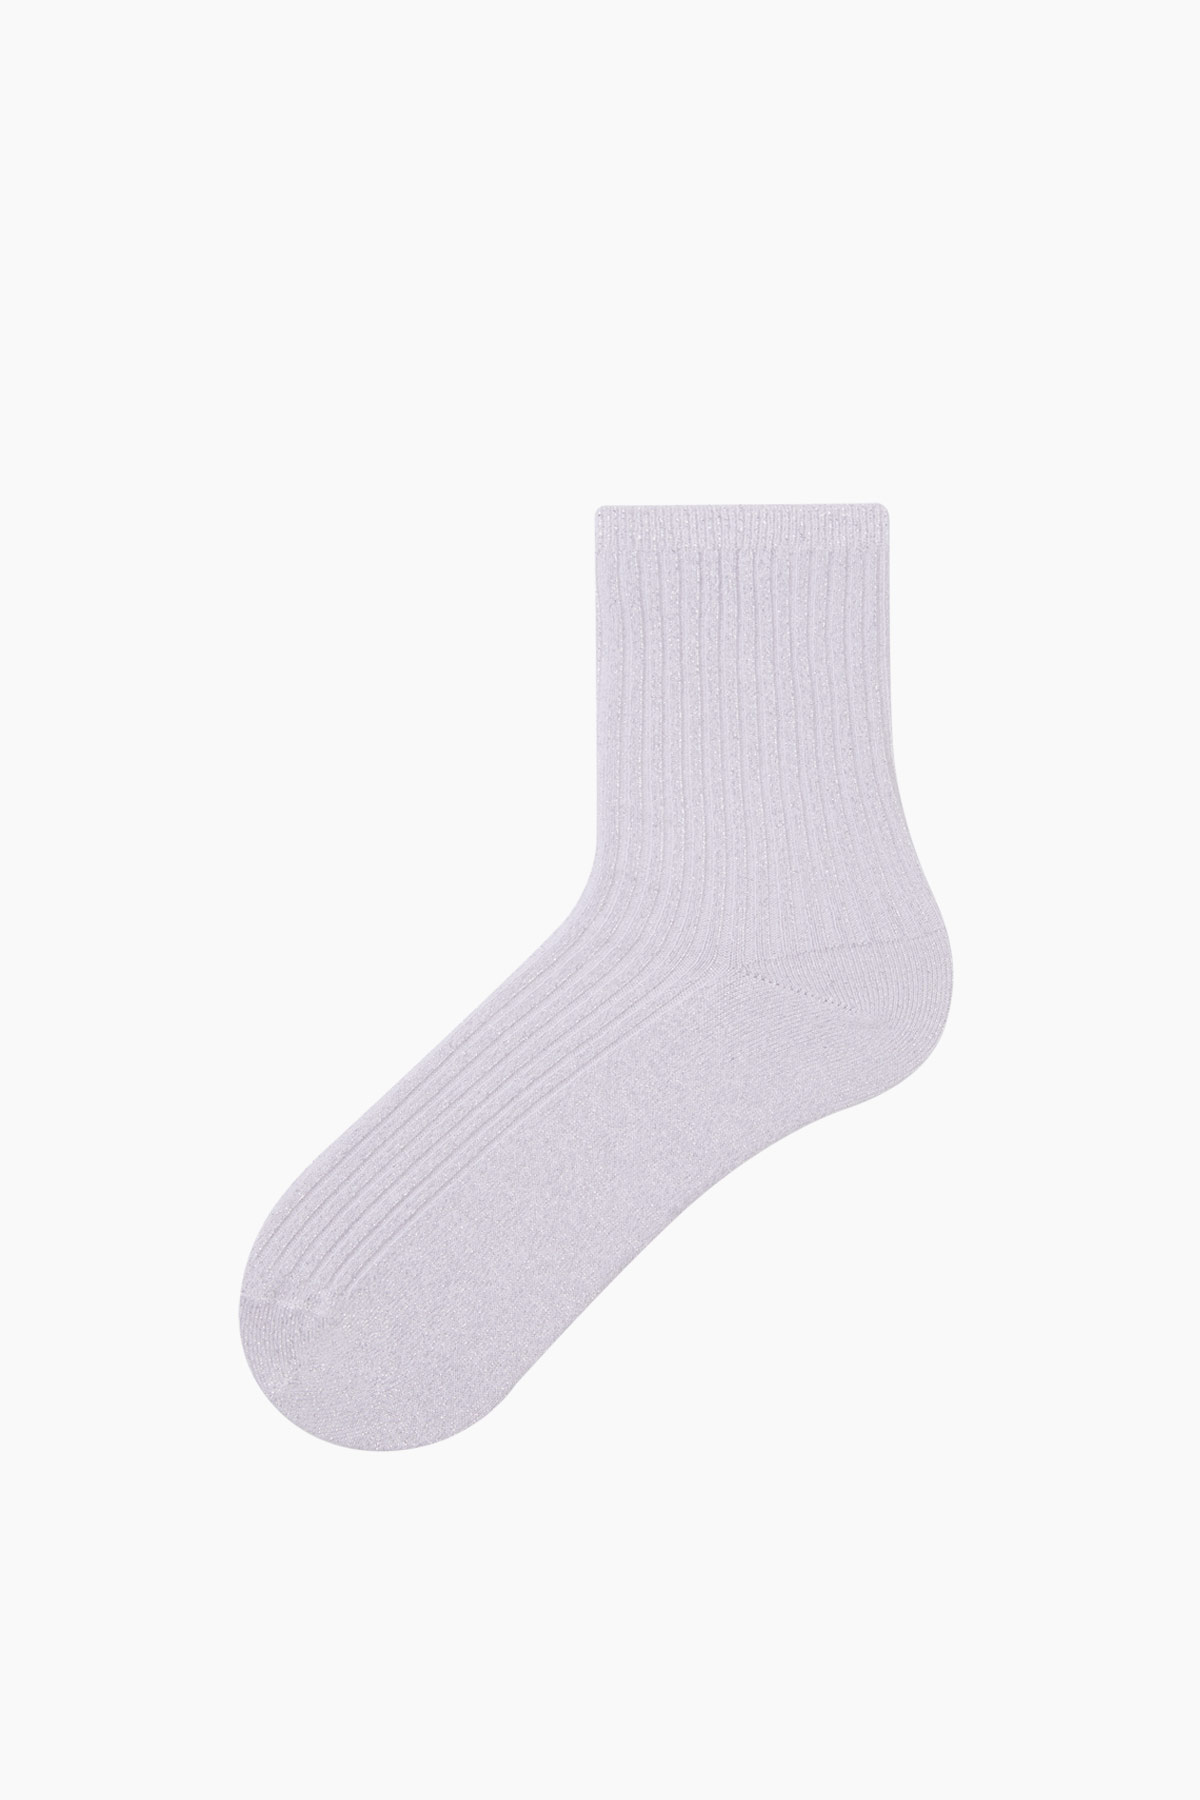 Bross Silvery Women's Socks - Thumbnail